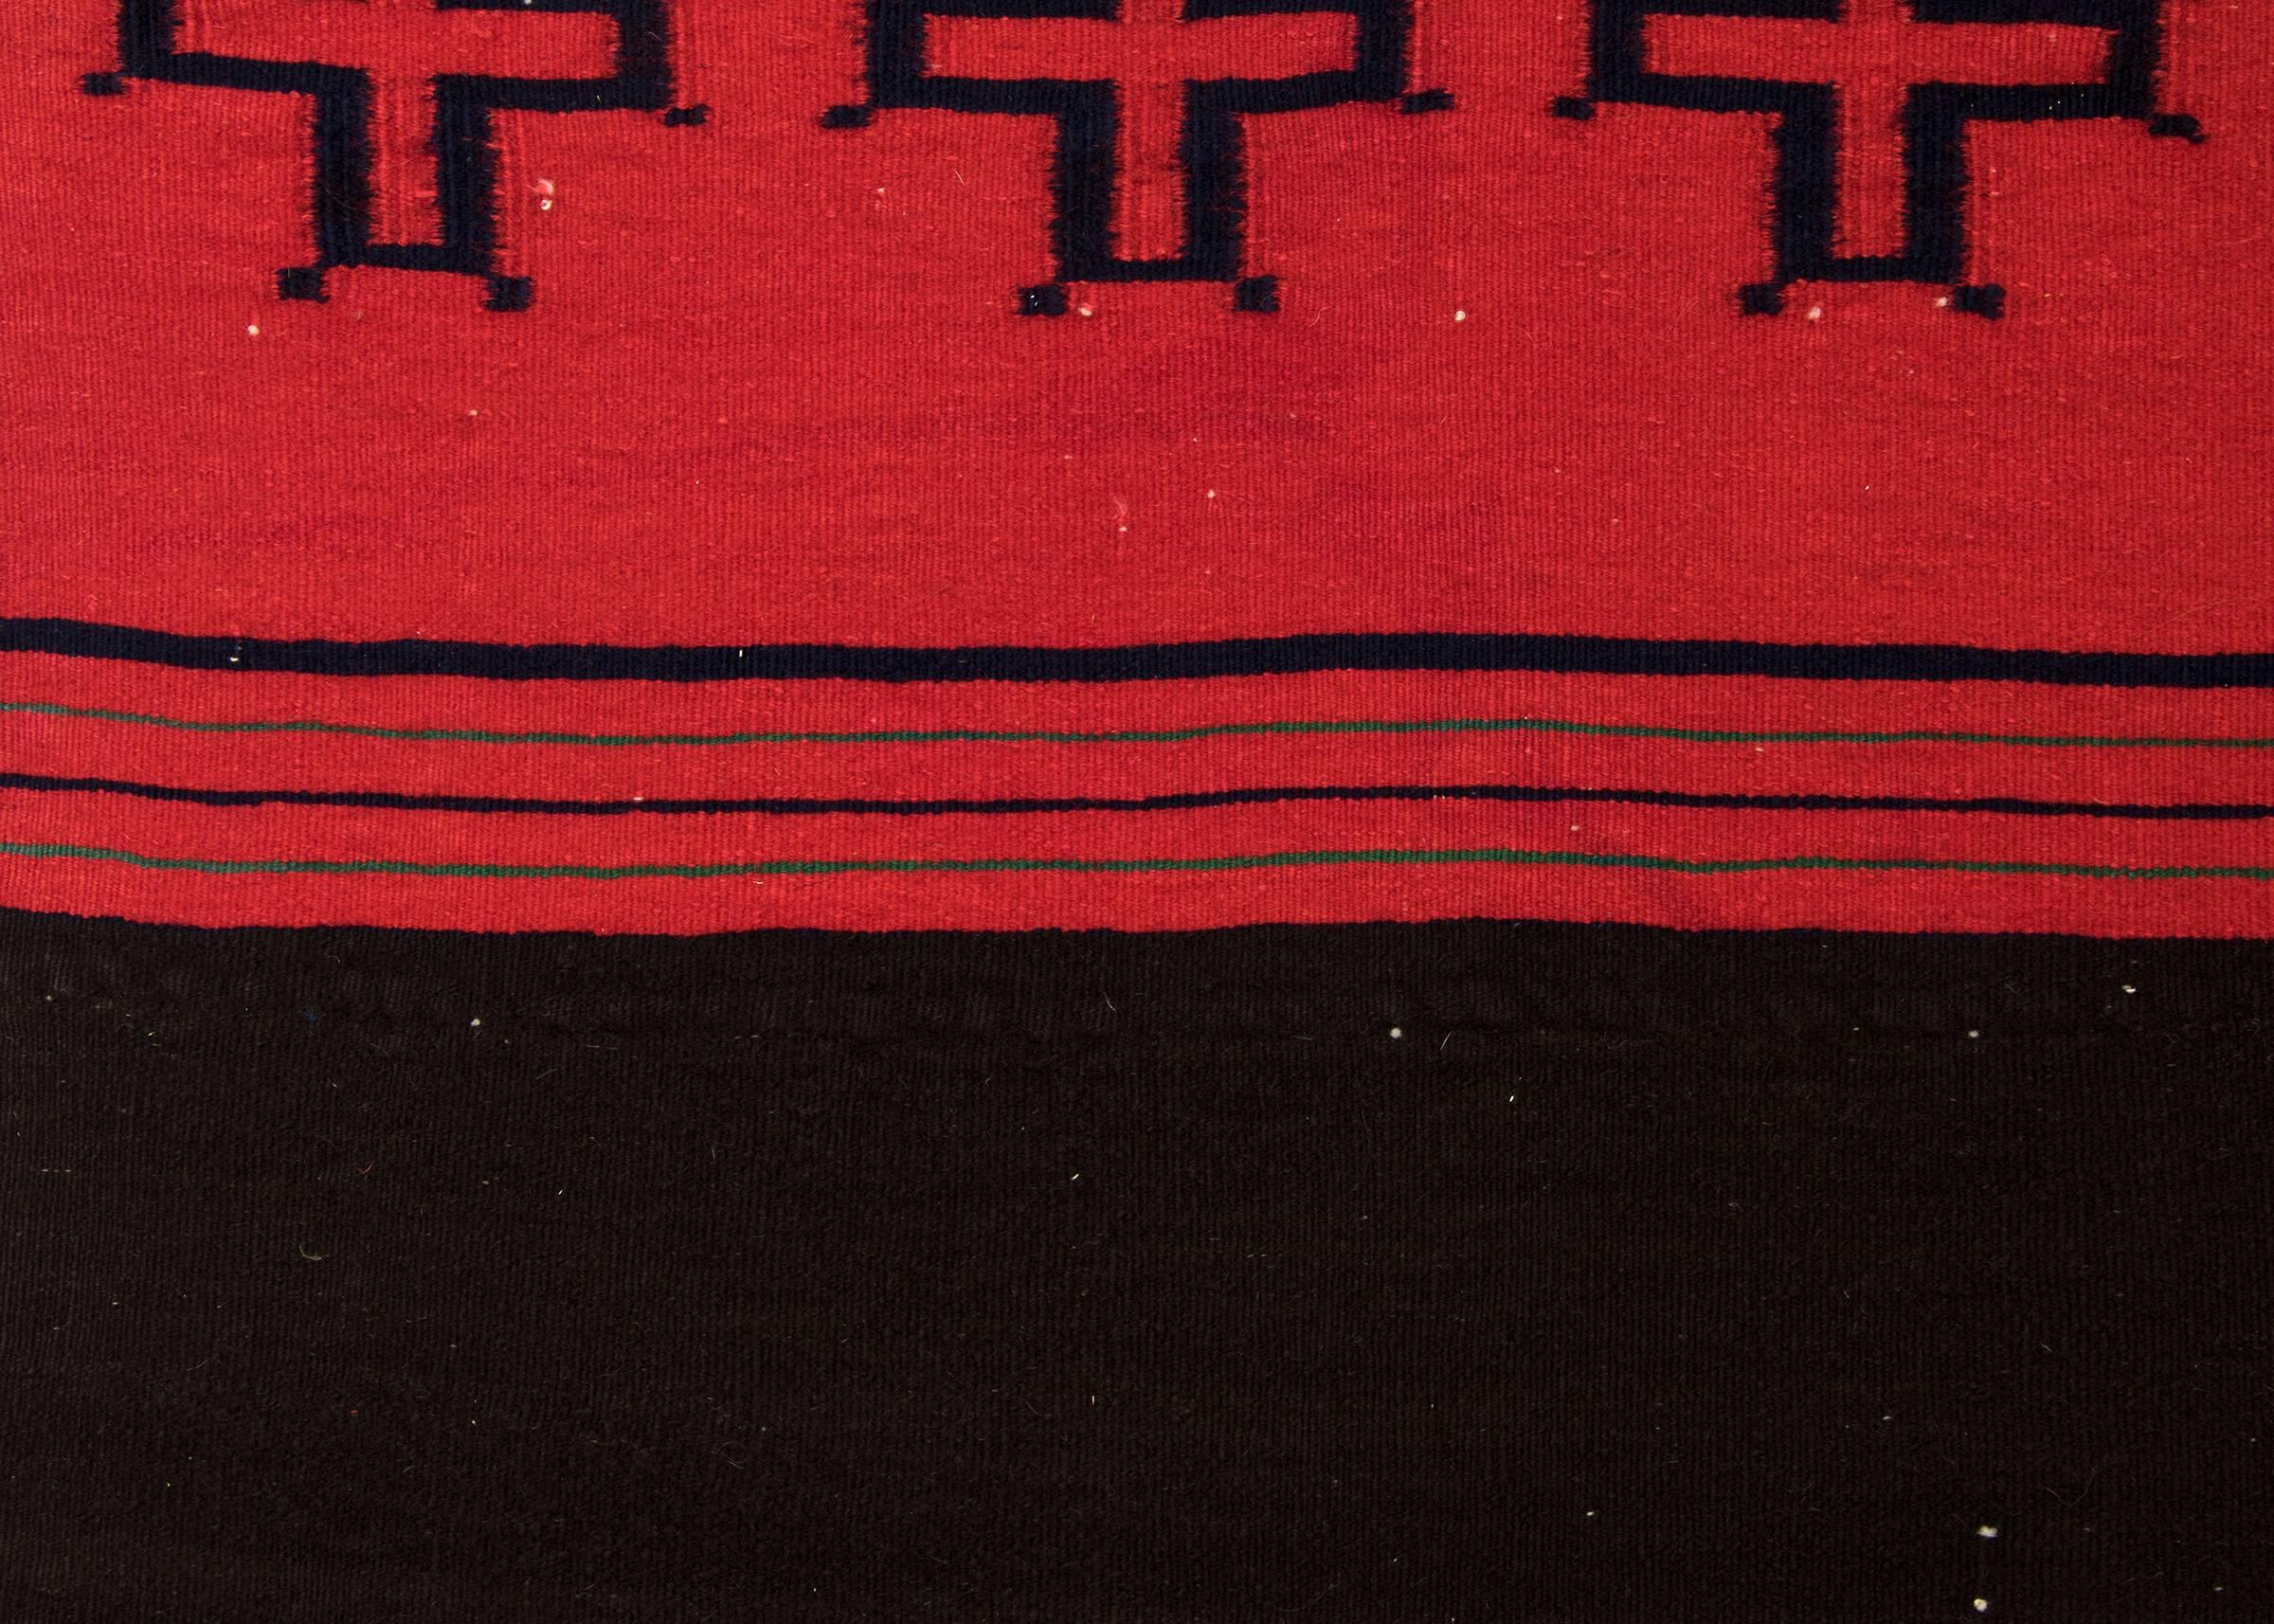 Native American Antique Navajo Woven Dress Halves, circa 1860